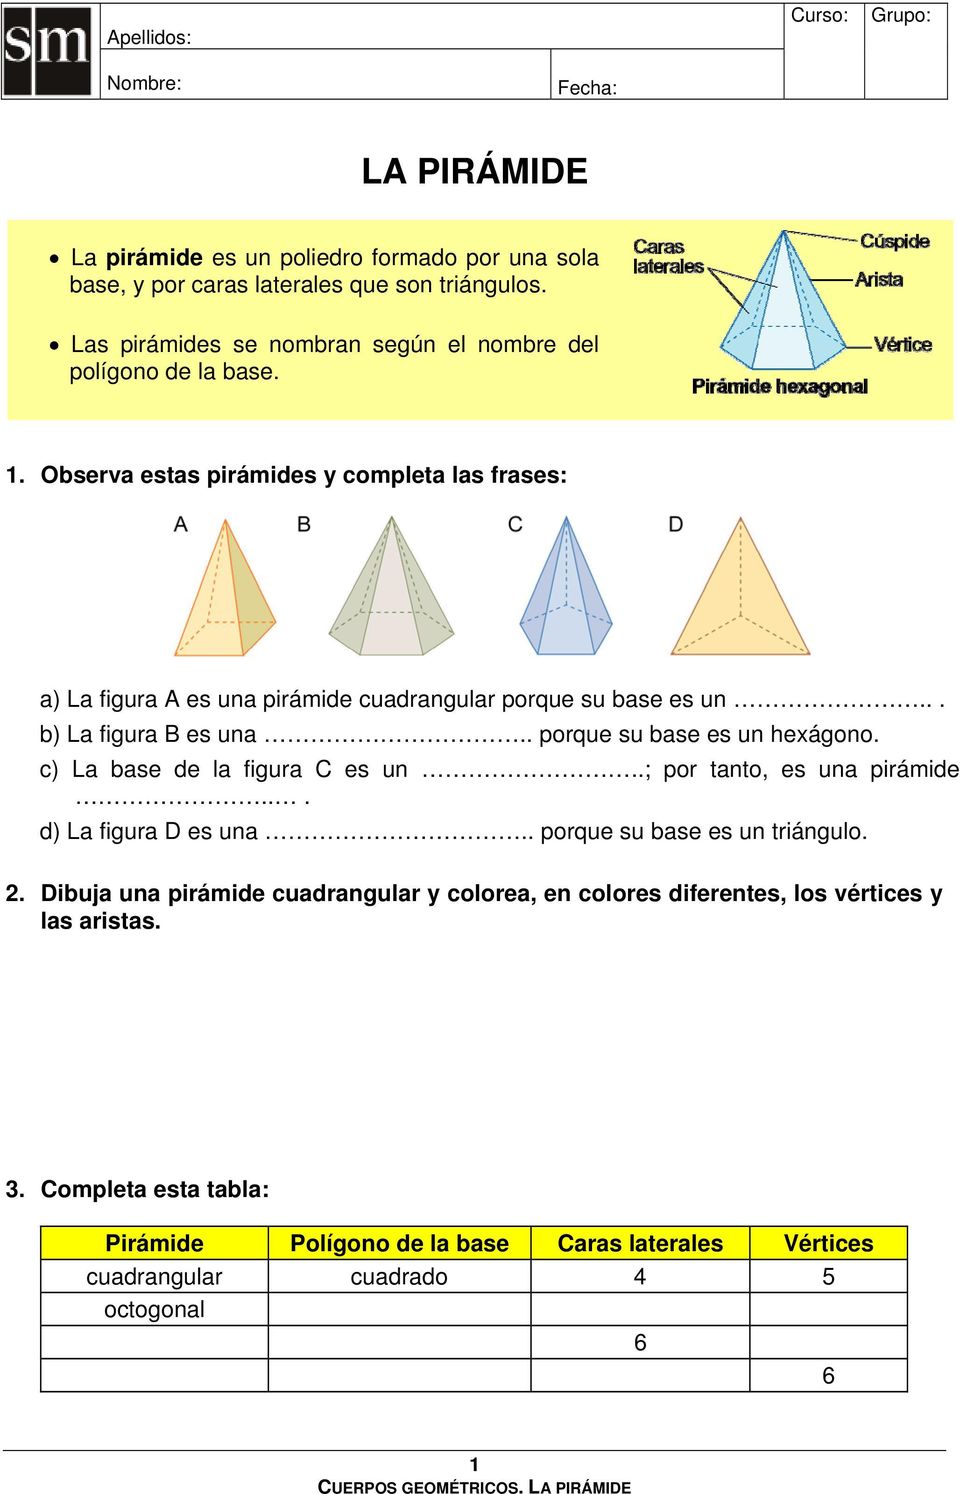 .. b) La figura B es una.. porque su base es un hexágono. c) La base de la figura C es un..; por tanto, es una pirámide... d) La figura D es una.. porque su base es un triángulo.